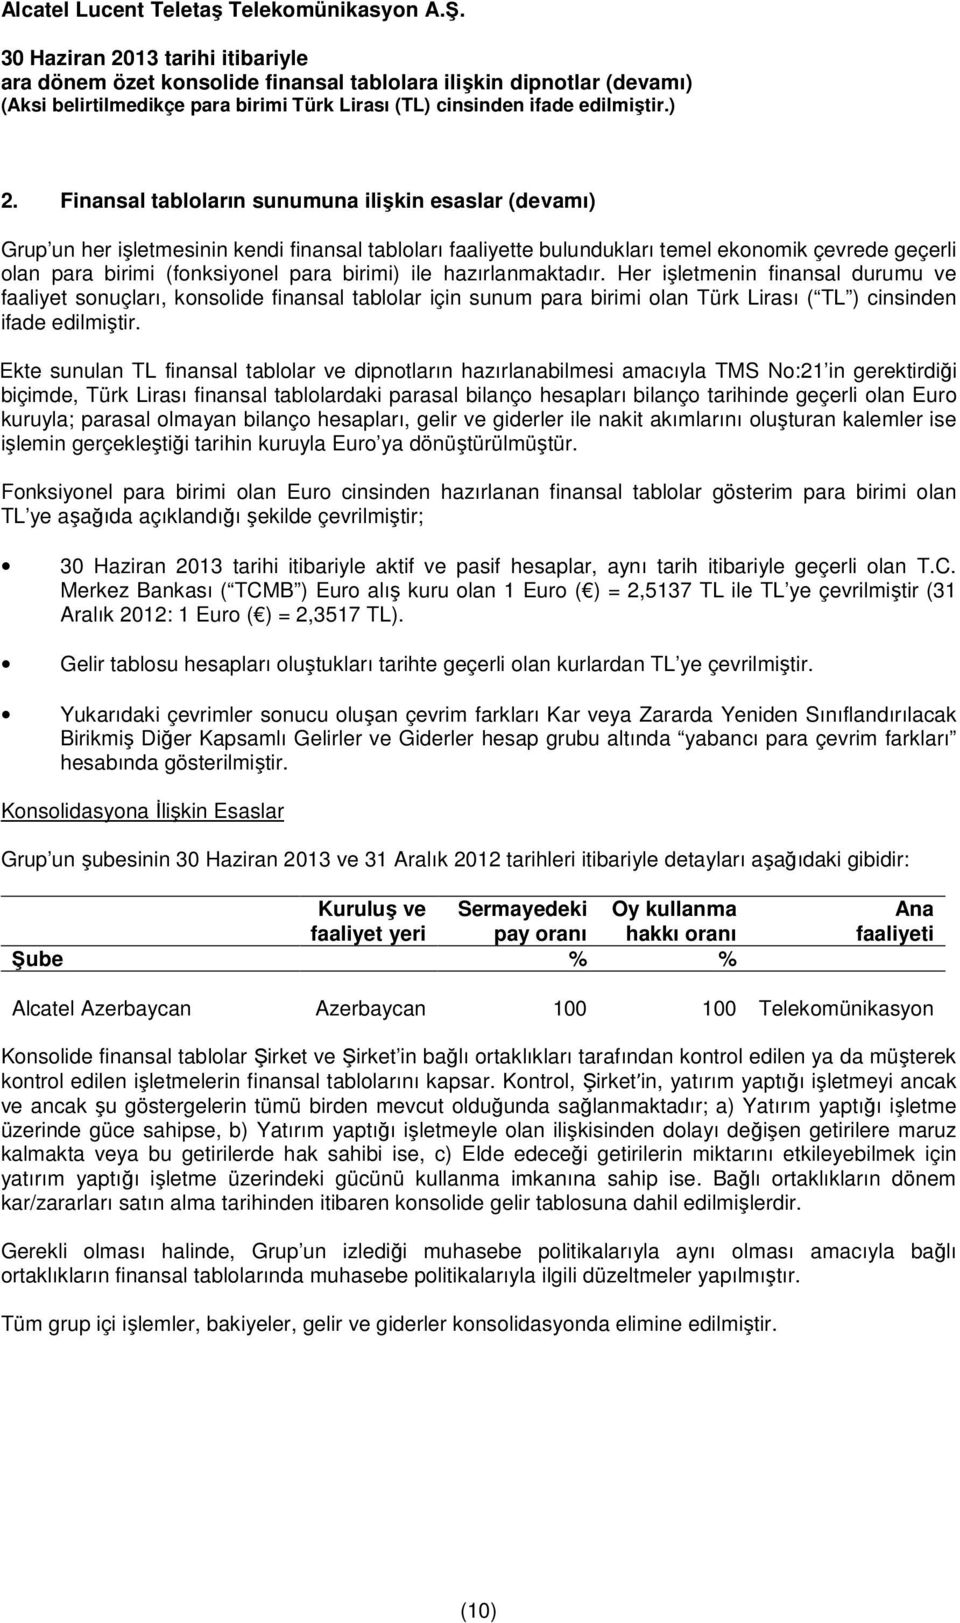 Ekte sunulan TL finansal tablolar ve dipnotların hazırlanabilmesi amacıyla TMS No:21 in gerektirdiği biçimde, Türk Lirası finansal tablolardaki parasal bilanço hesapları bilanço tarihinde geçerli